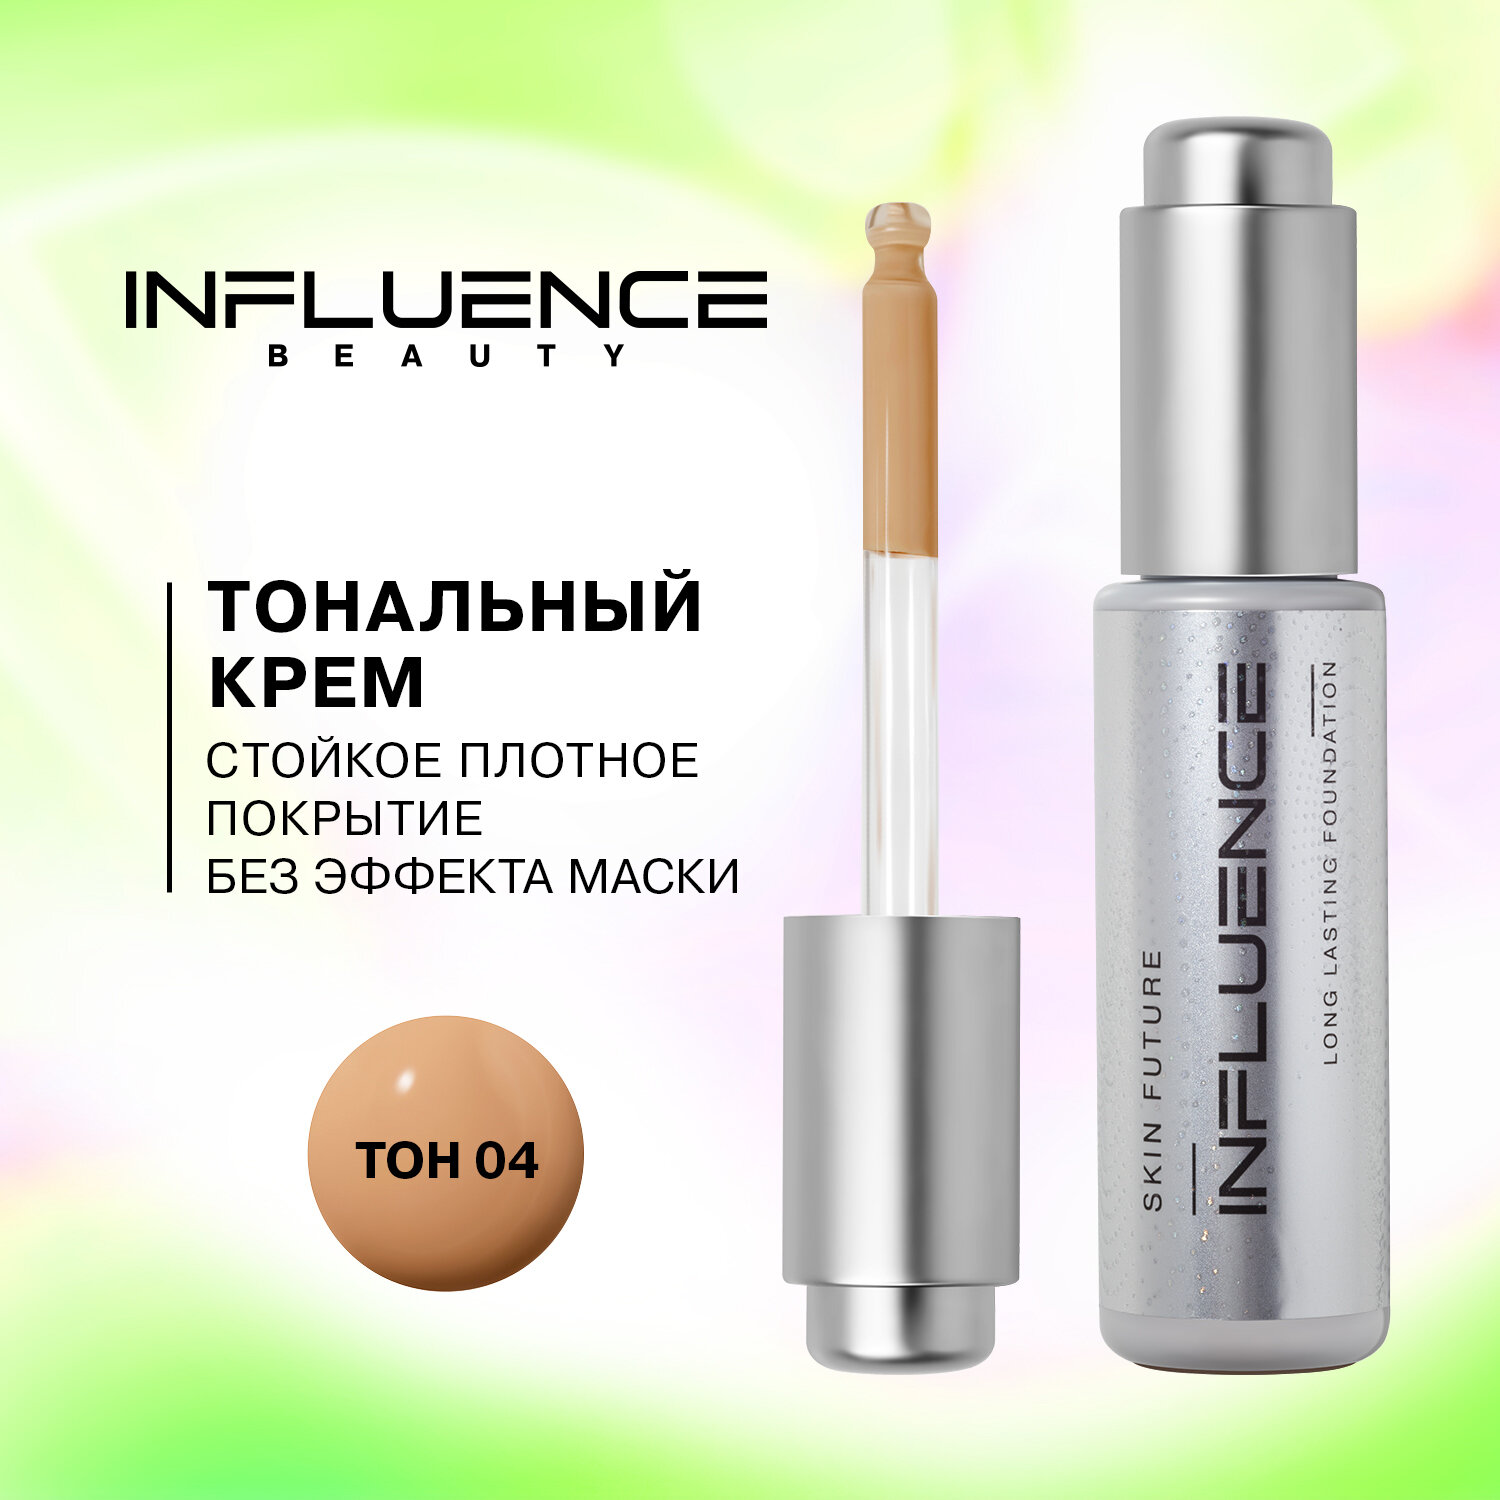 Influence Beauty Тональная основа Skin future суперстойкая, плотное покрытие без эффекта маски, 25мл, 25 мл, оттенок: 04 темно-бежевый, 1 шт.